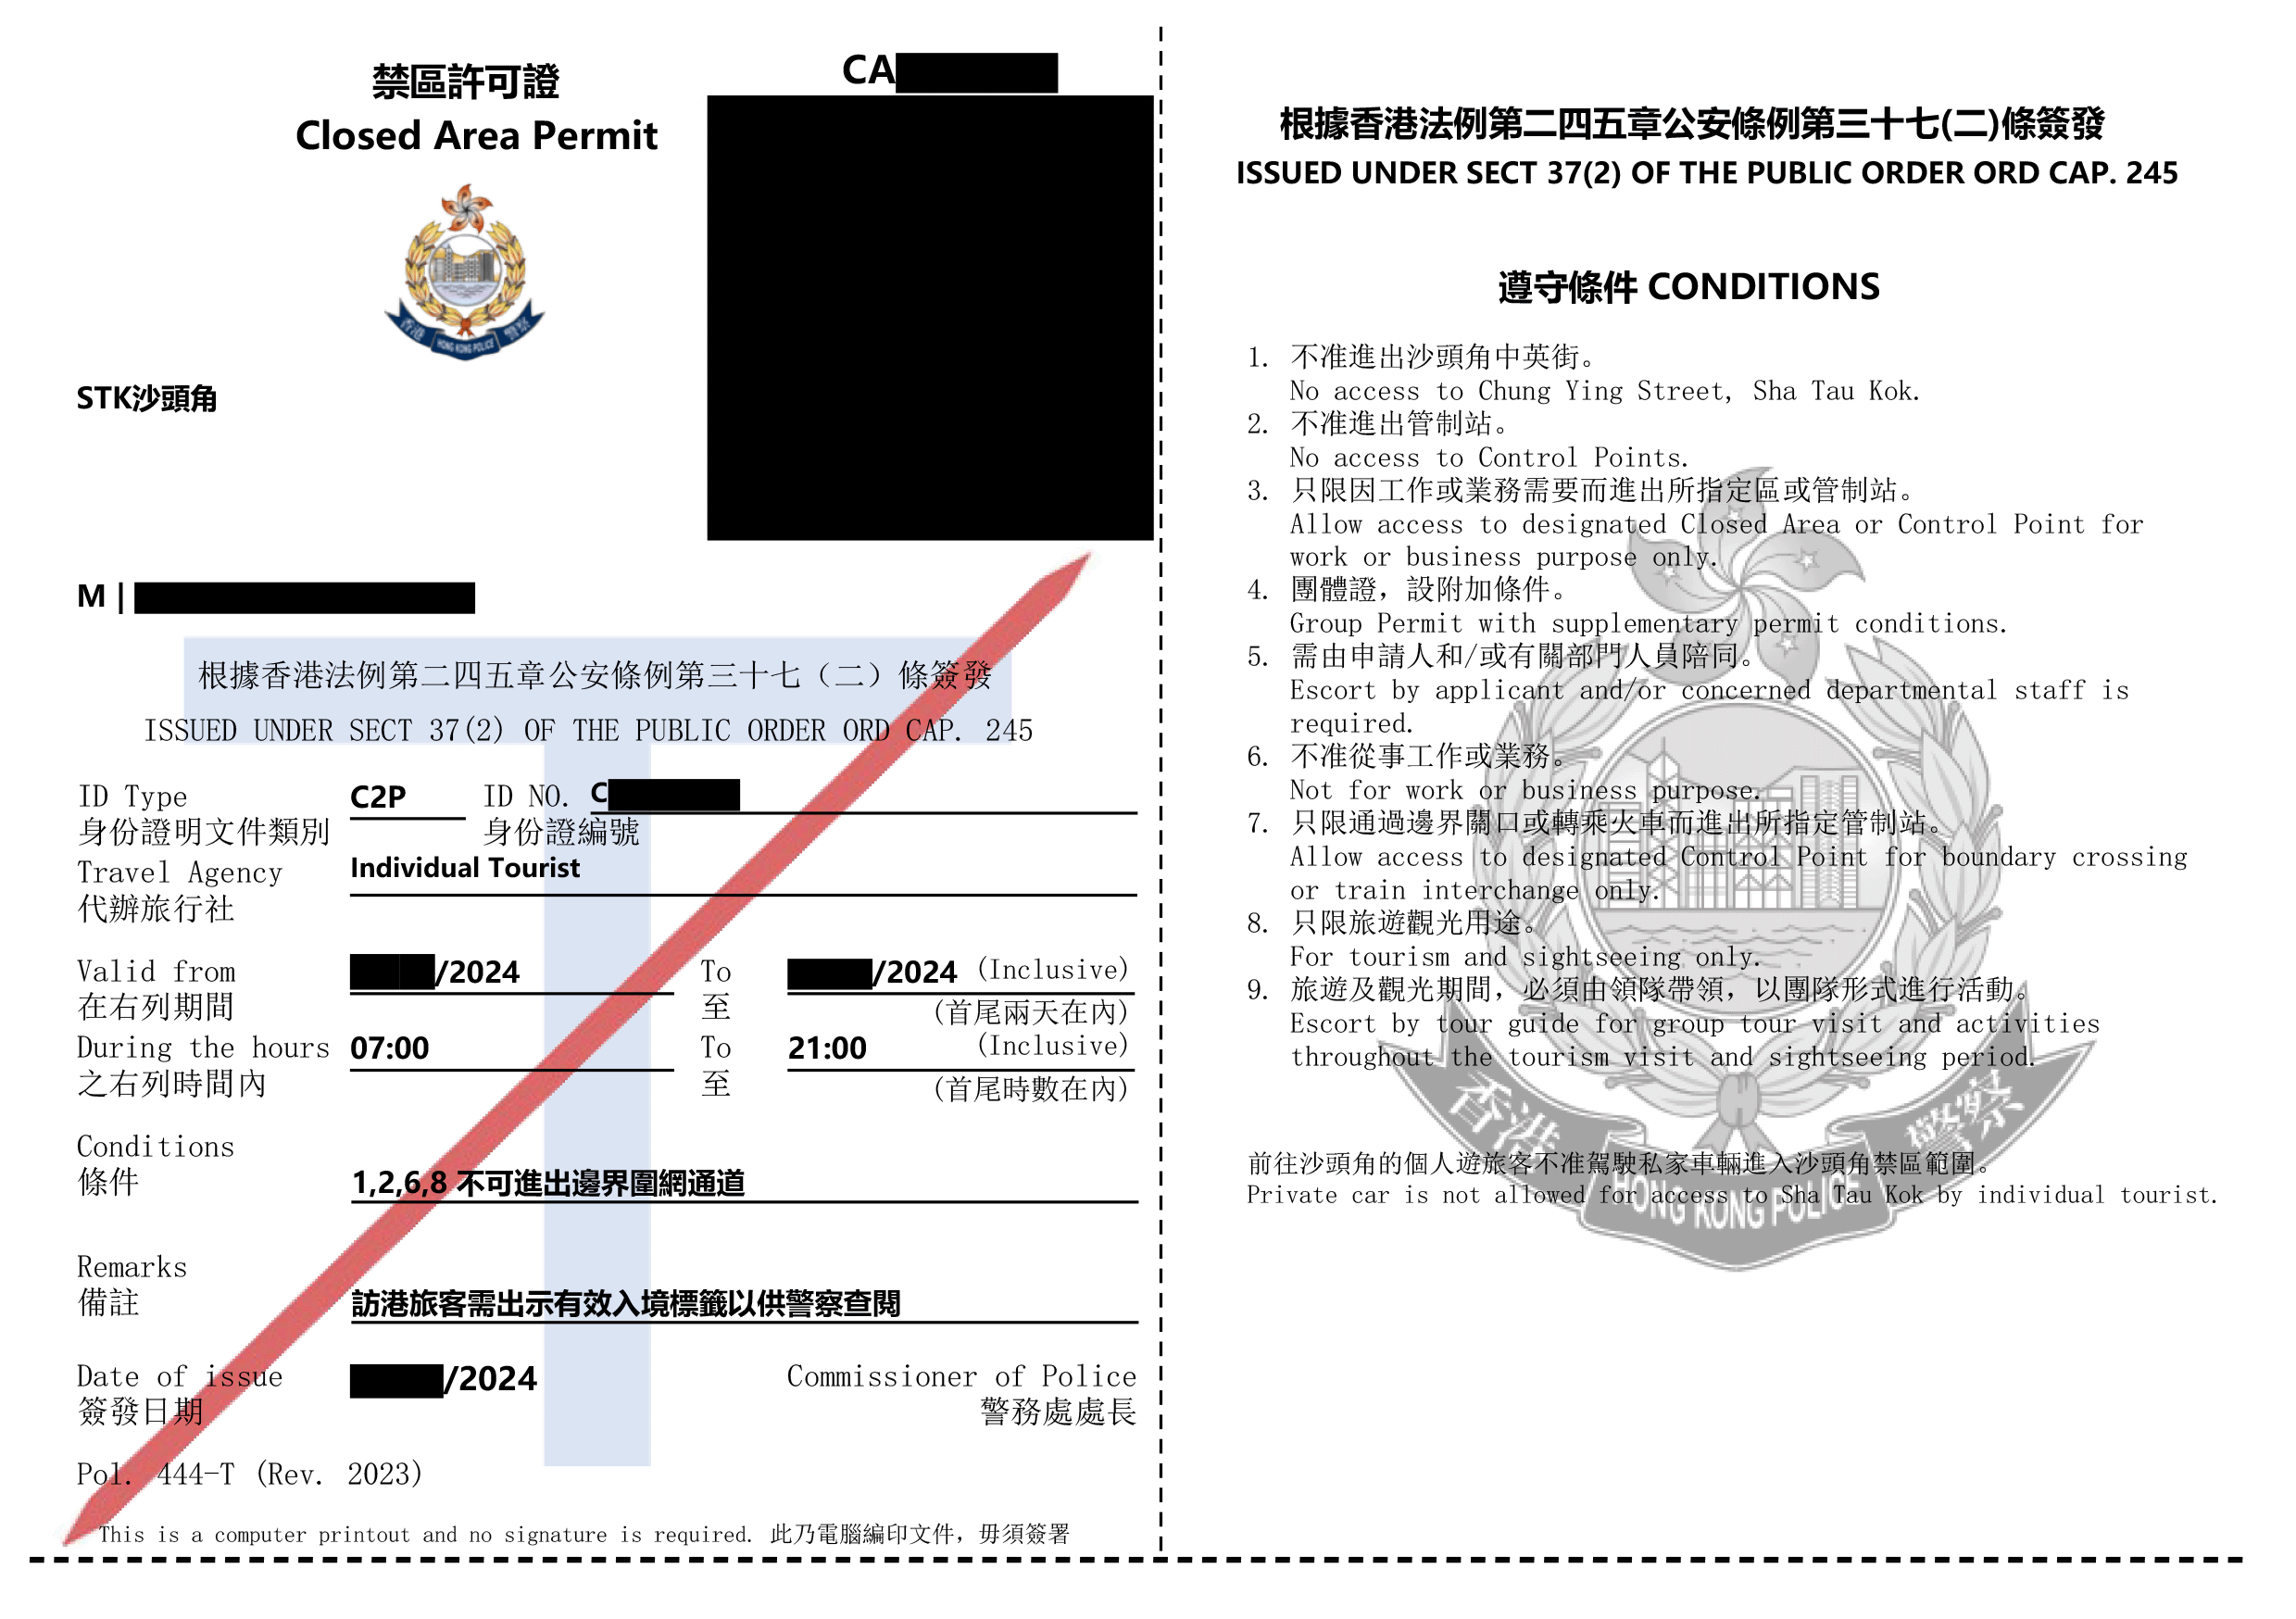 Sample permit